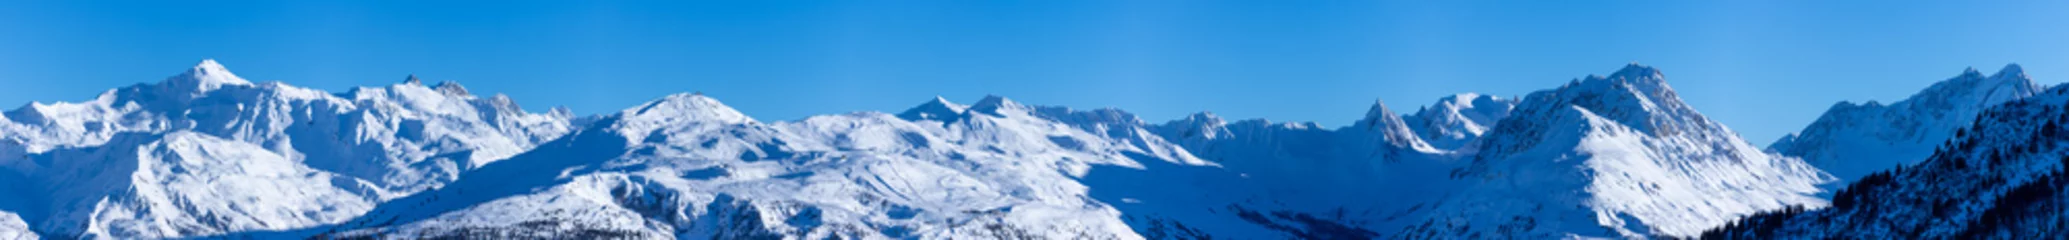 Foto op Plexiglas vue ultra panoramique sur une chaîne de montagnes enneigées des alpes © Tof - Photographie